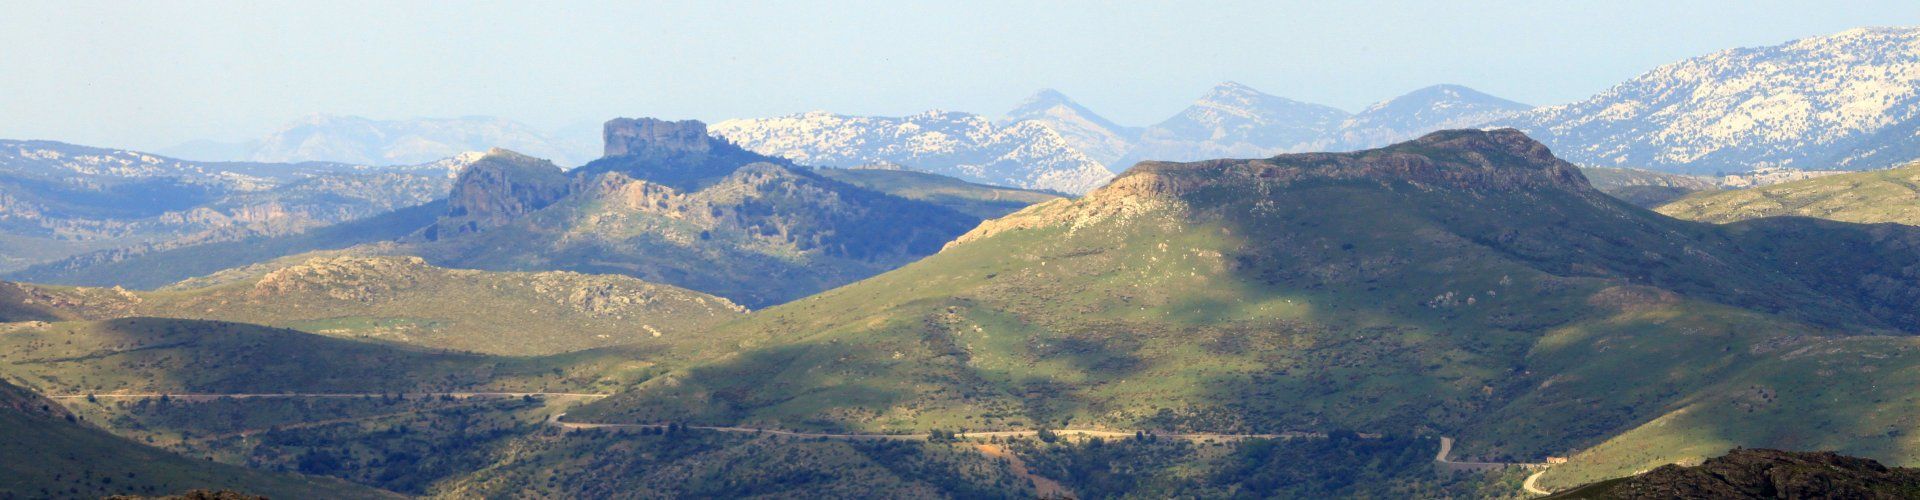 Barbagia, Monti del Gennargentu